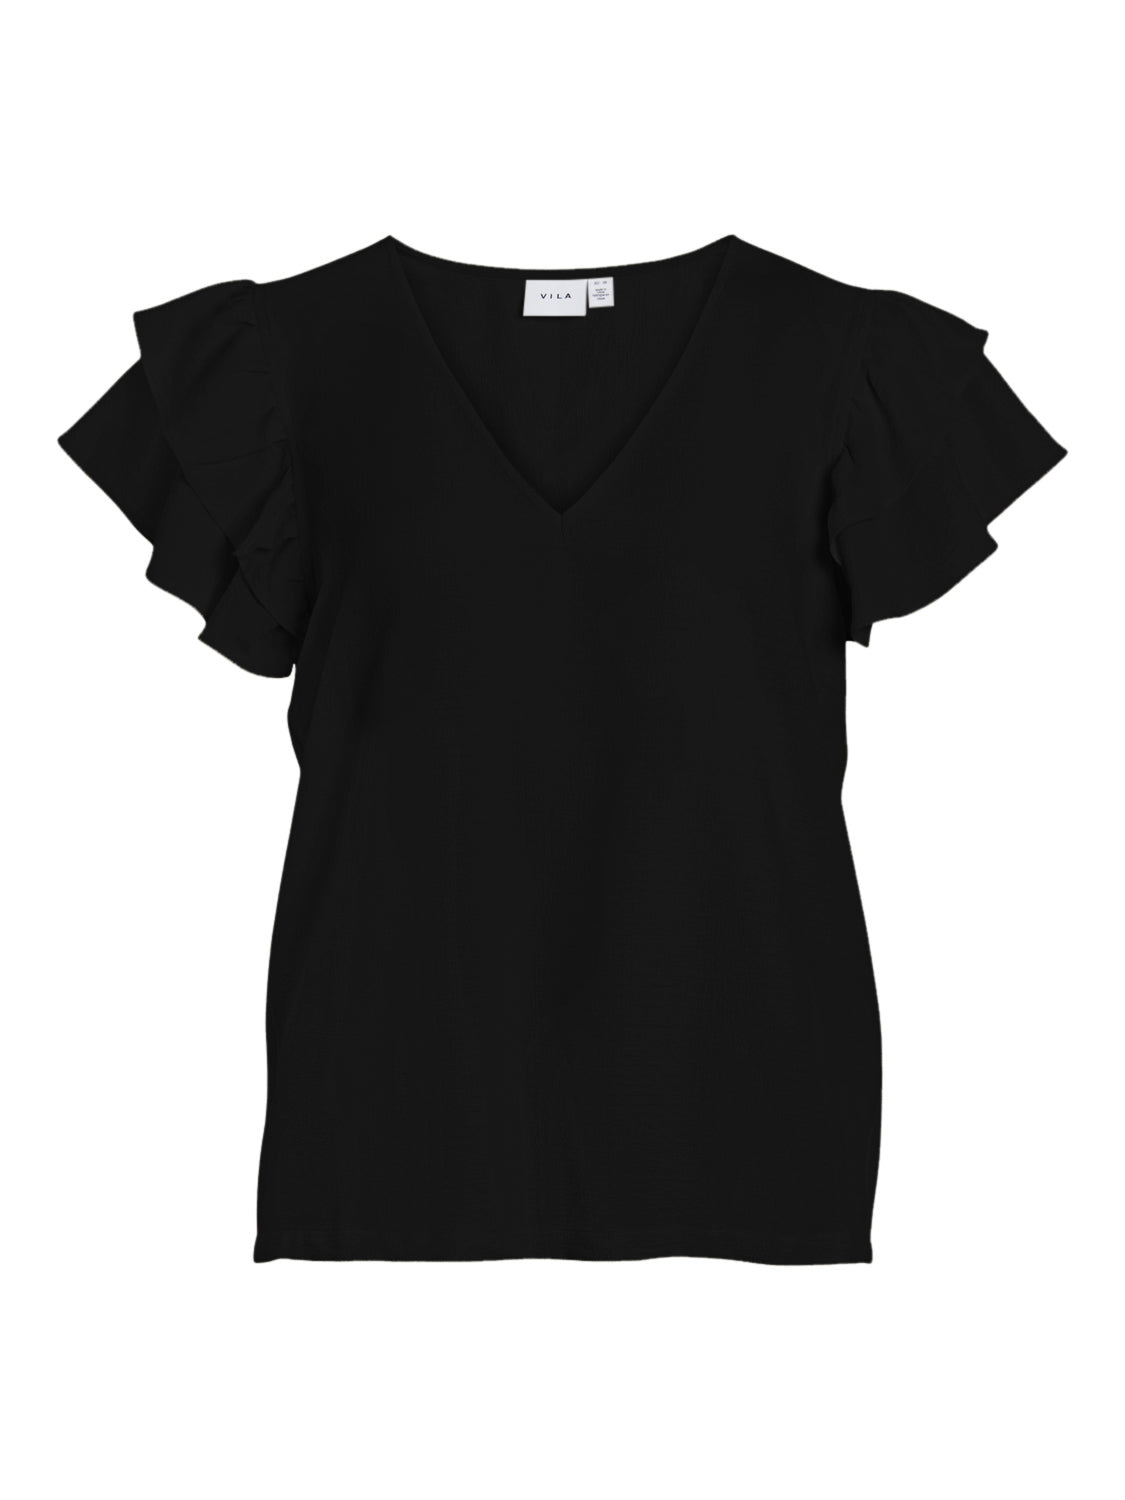 VIMACY T-Shirts & Tops - Black